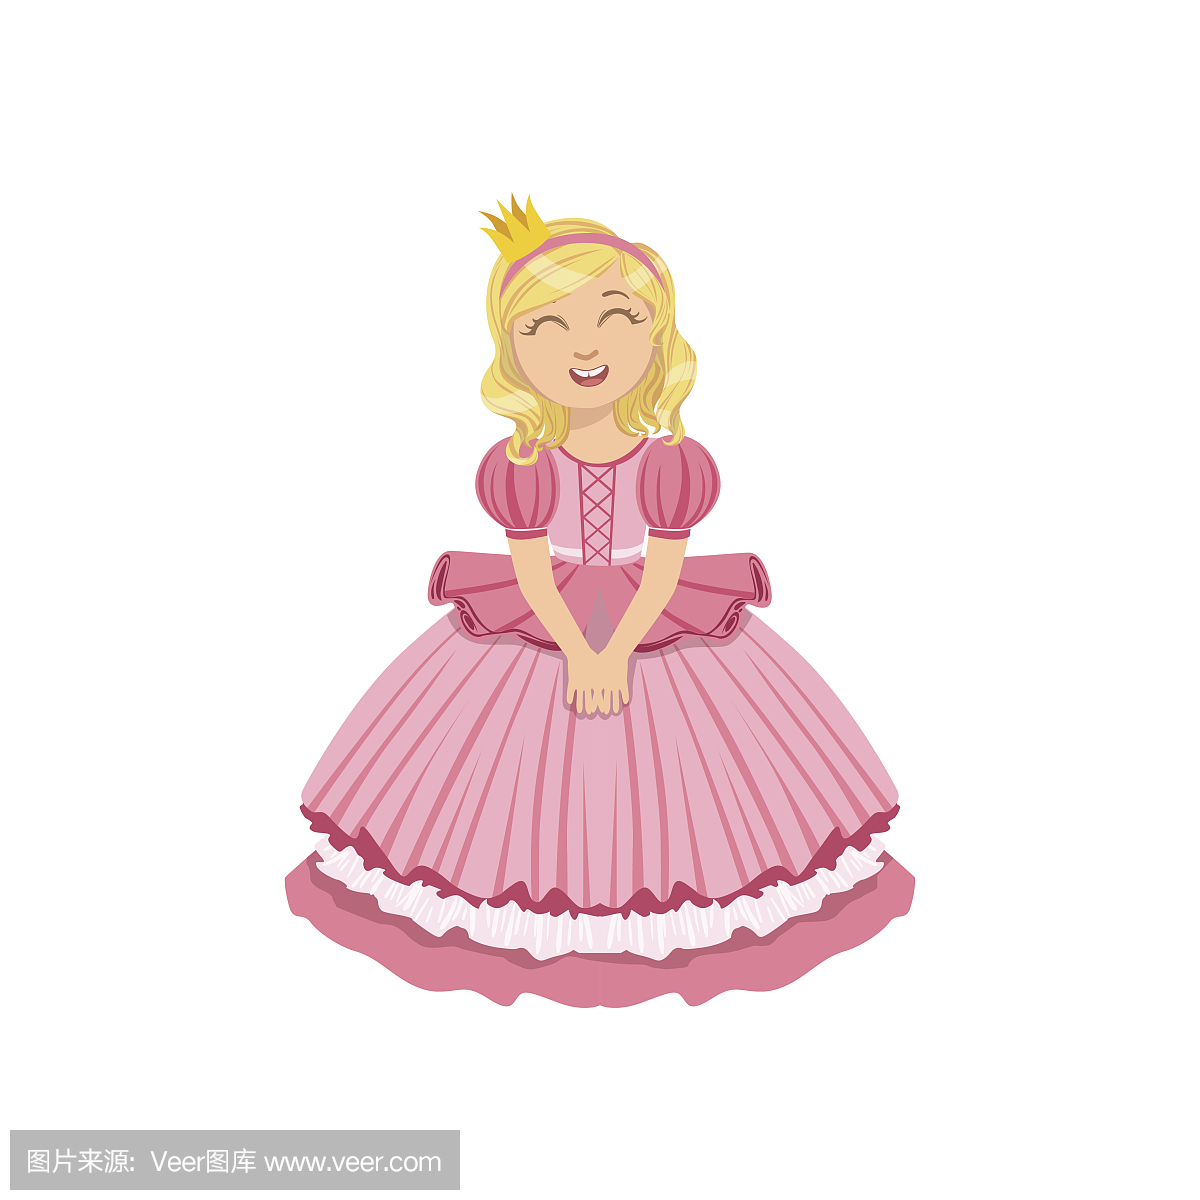 小女孩在粉红色的衣服打扮成童话公主